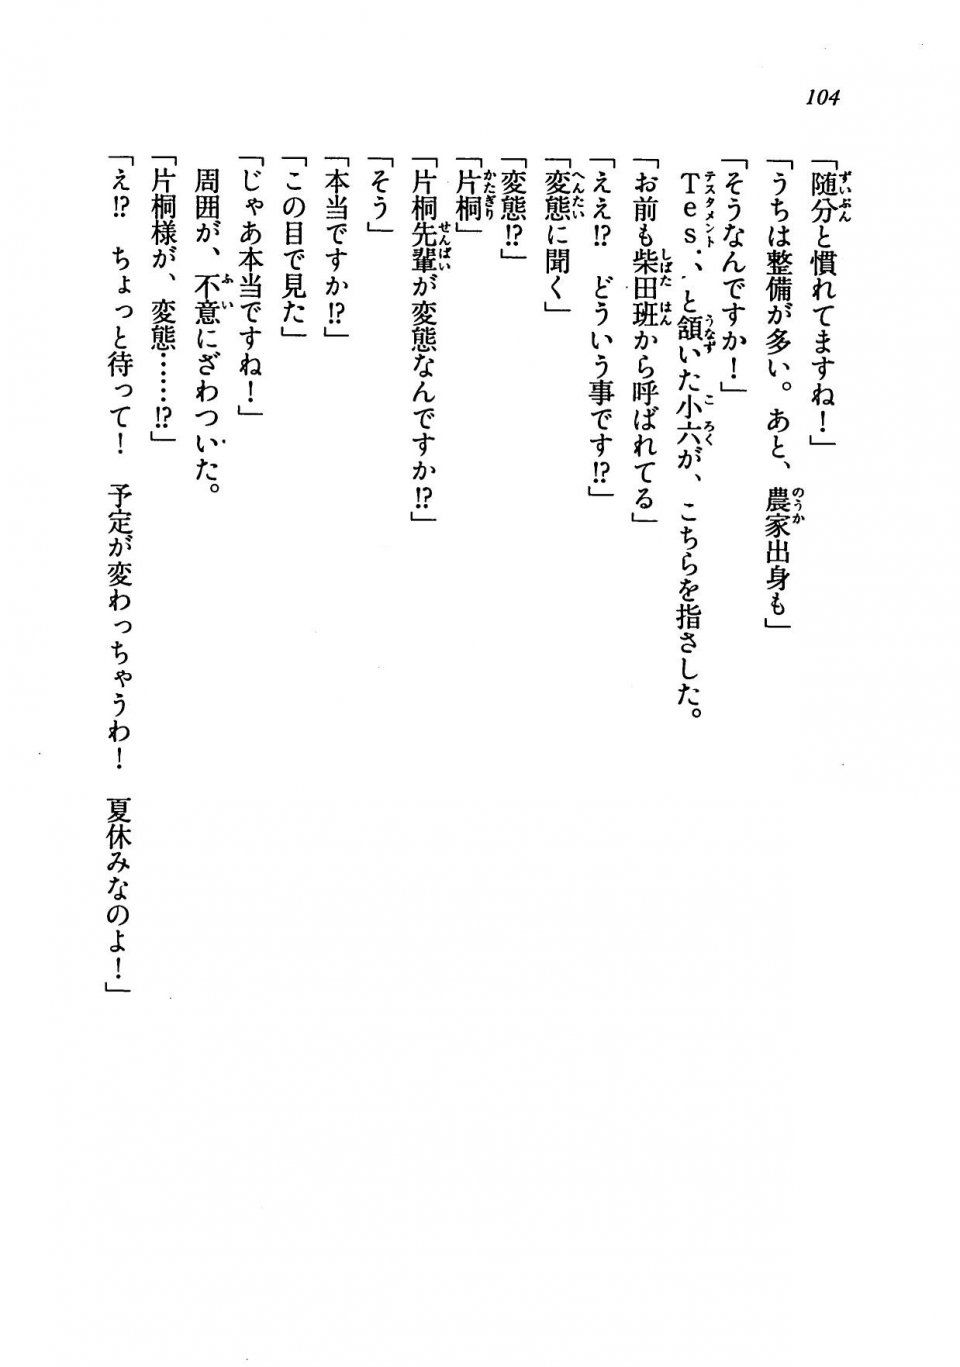 Kyoukai Senjou no Horizon LN Vol 19(8A) - Photo #104